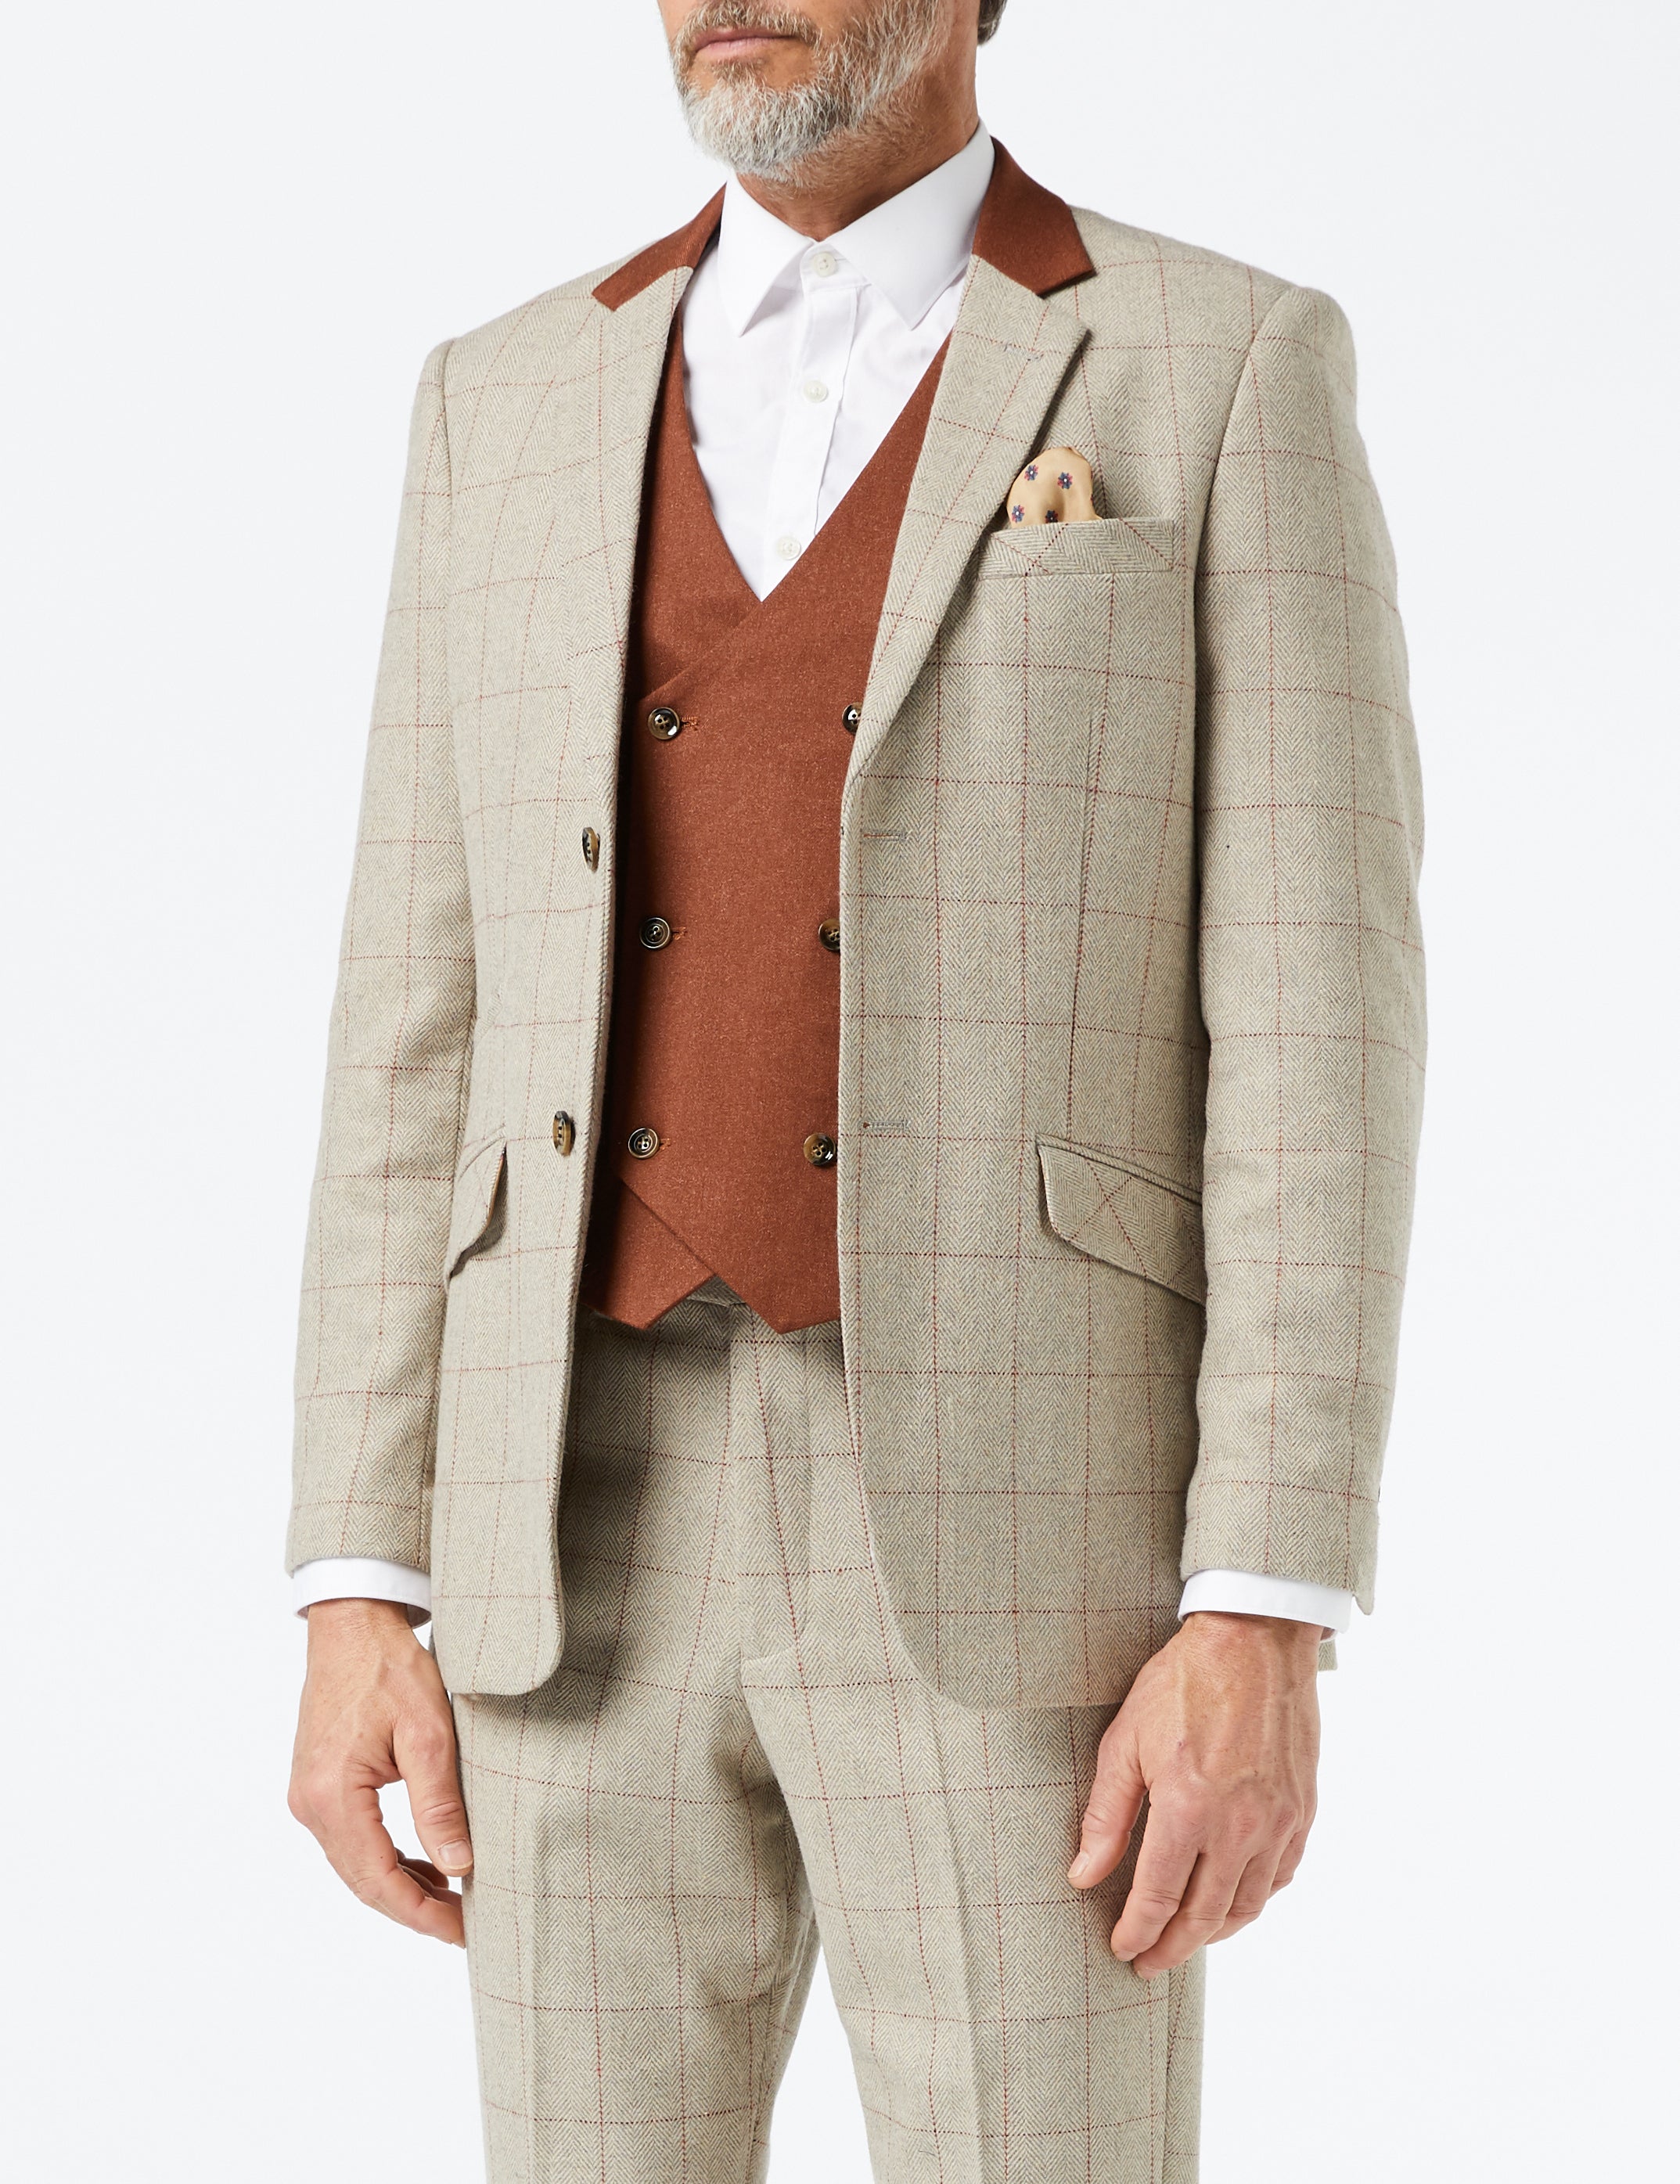 Mens 3 Piece Tweed Herringbone Red Check On Beige Mod Vintage Suit Tailored Fit